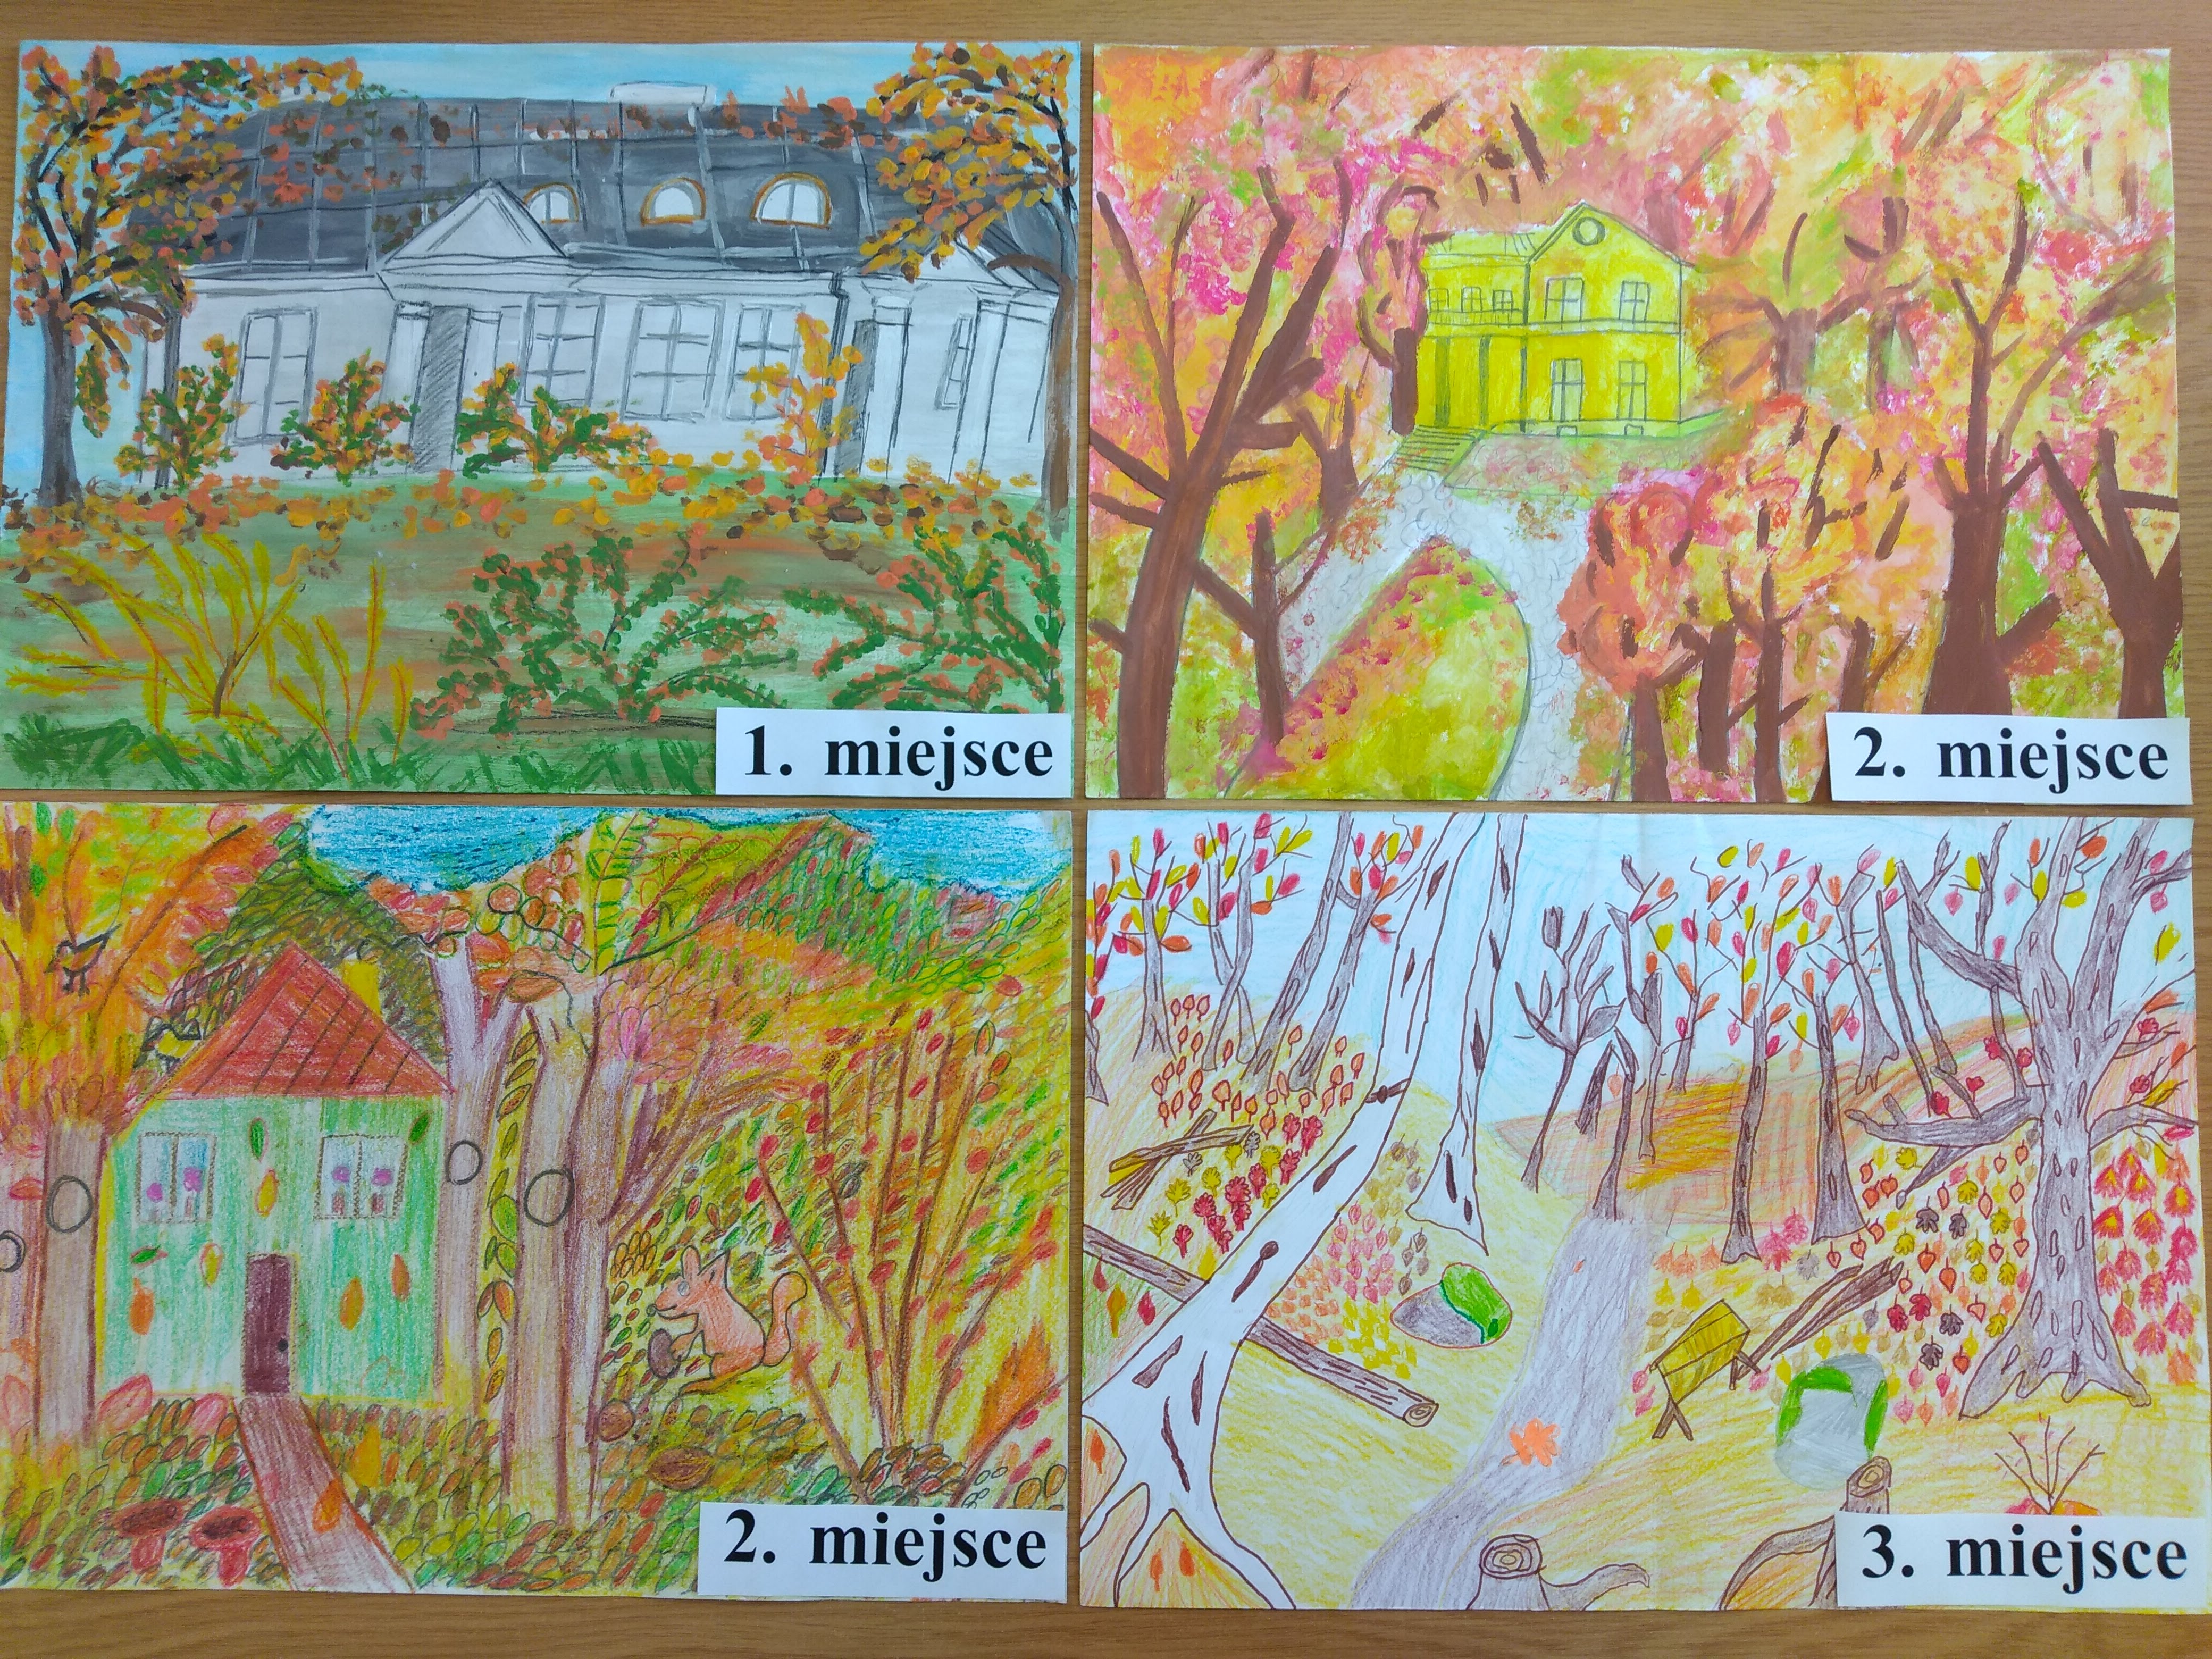 Na pracach są umieszczone tabliczki z numerami miejsc. W lewym górnym roku, w lewym dolnym roku oraz w prawym górnym roku  znajdują się prace na których centralną część zajmują budynki mieszkalne w szarym, żółtym i czerwonym kolorze, wokół nich są drzewa i krzewy w barwach jesieni. W prawym dolnym roku znajduje się praca ukazująca fragment parku w jesiennej kolorystyce.